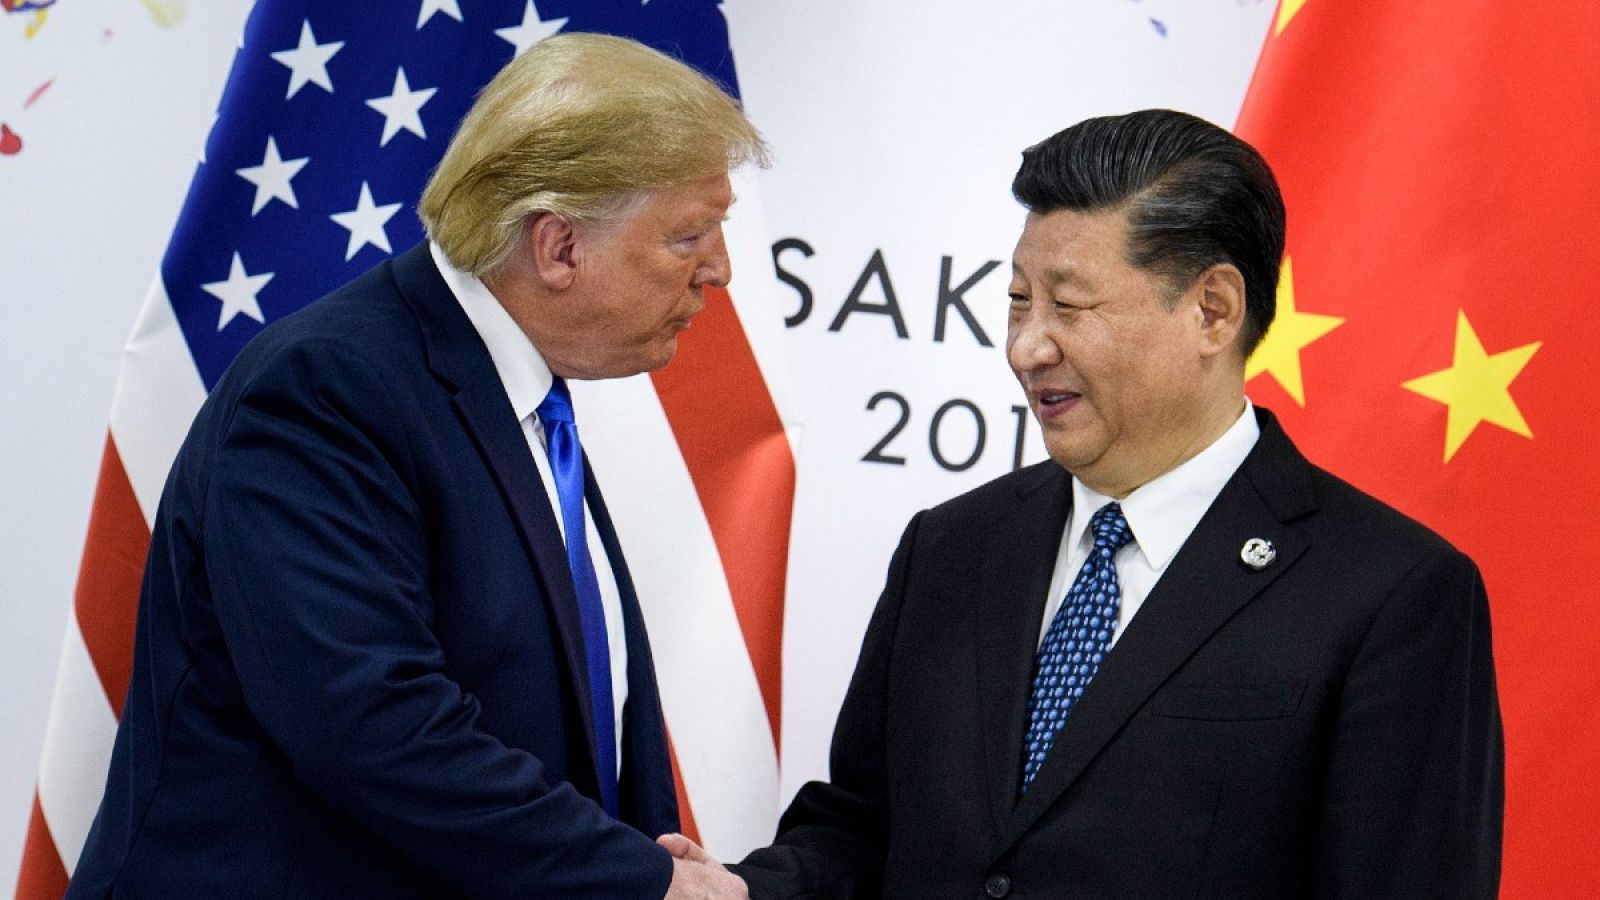 El presidente de China, Xi Jinping, estrecha la mano del presidente de EE.UU., Donald Trump, antes de una reunión bilateral al margen de la Cumbre del G20 de junio de 2019 en Osaka